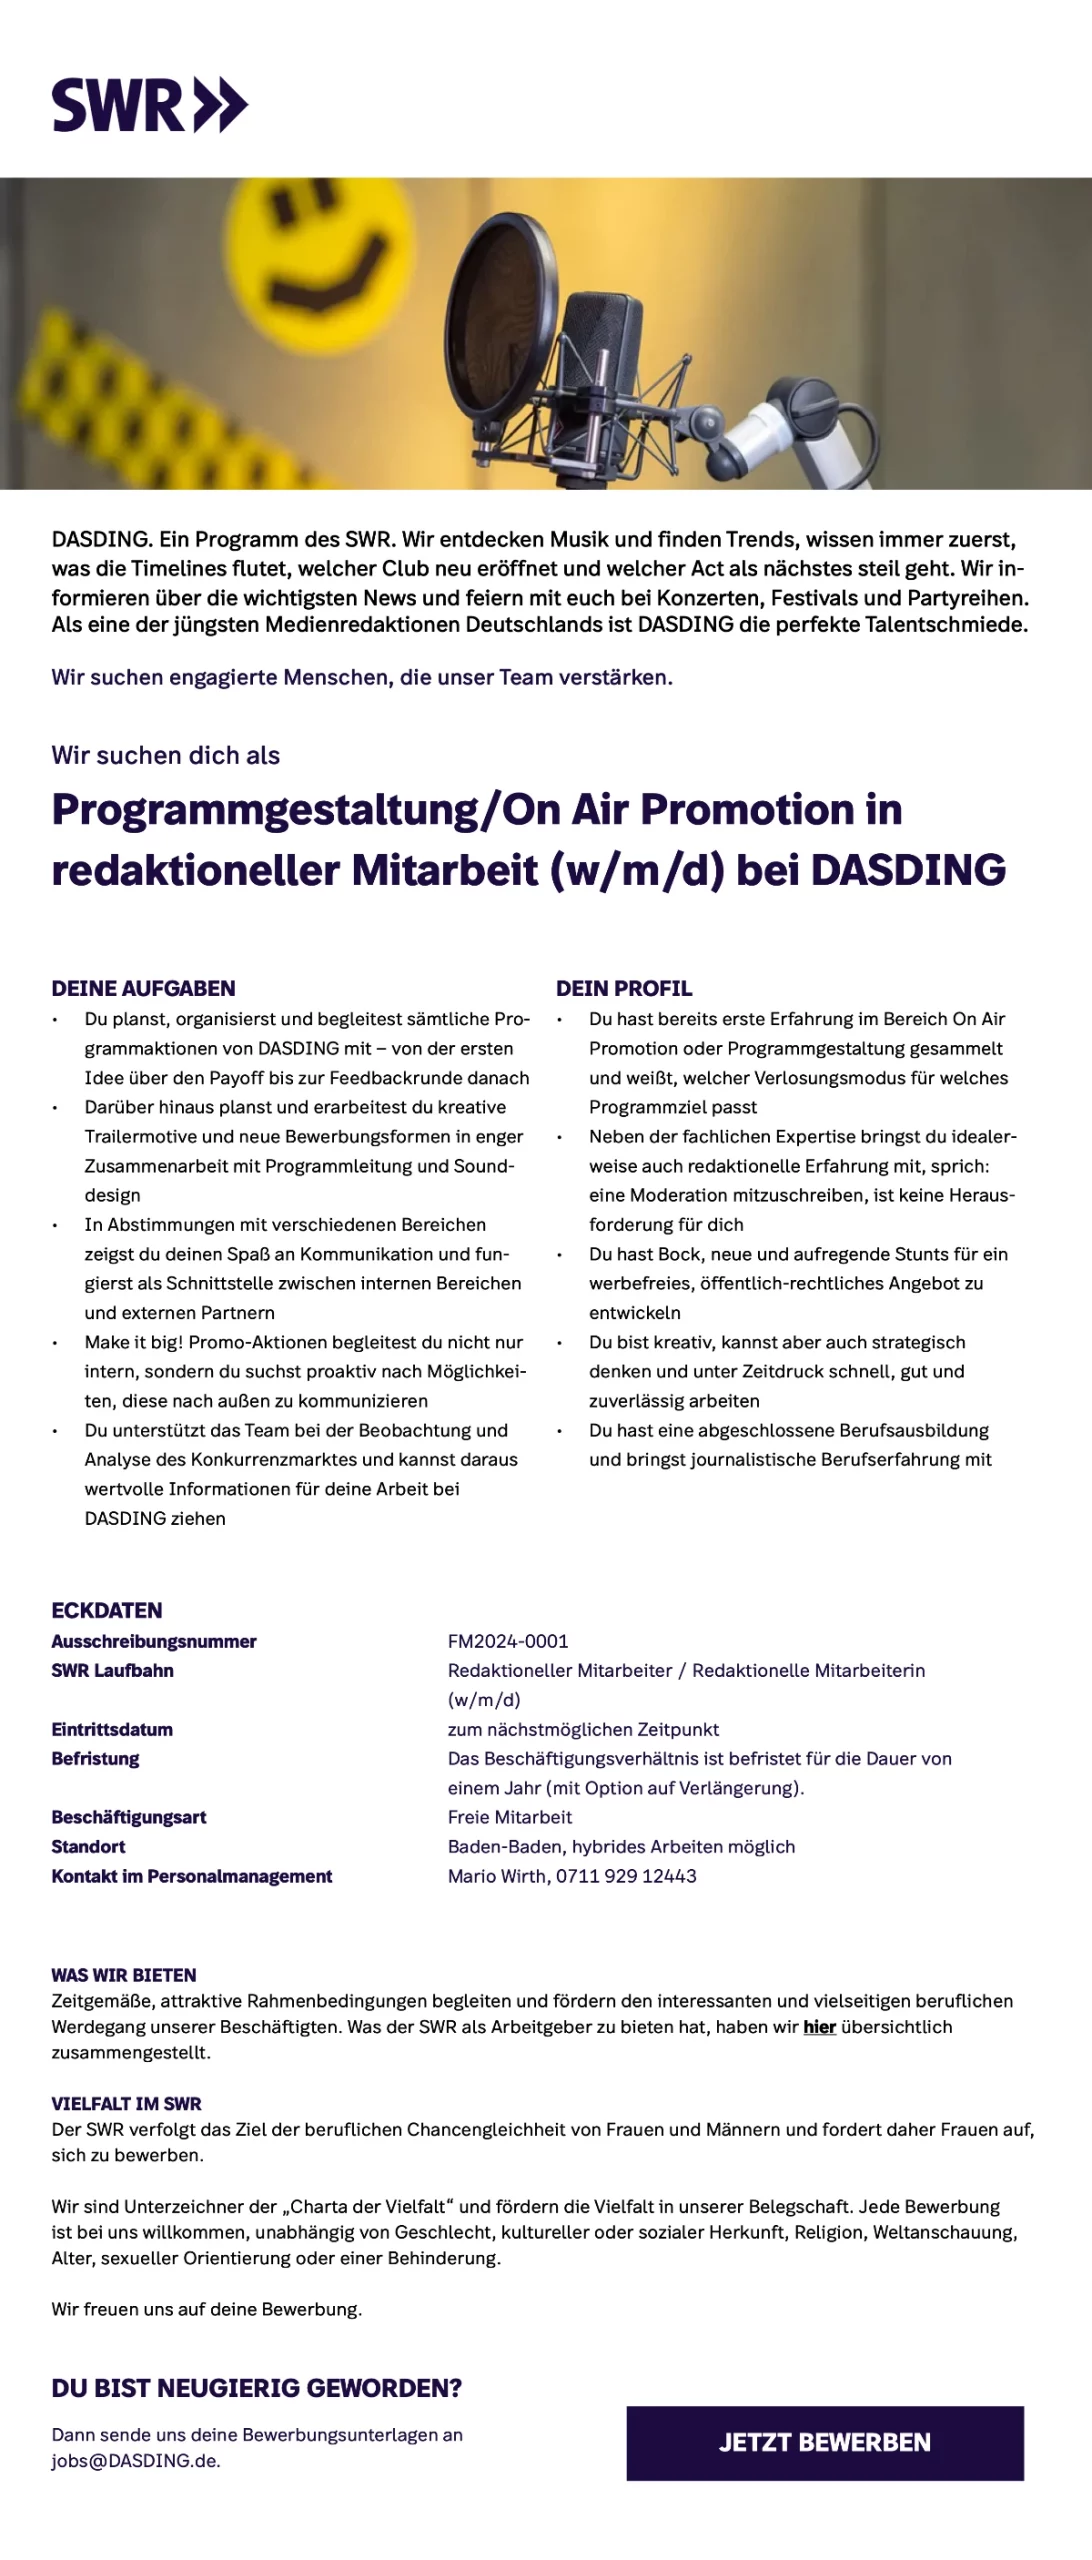 SWR bietet redaktionelle Mitarbeit in Programmgestaltung/On Air Promotion (w/m/d) bei DASDING